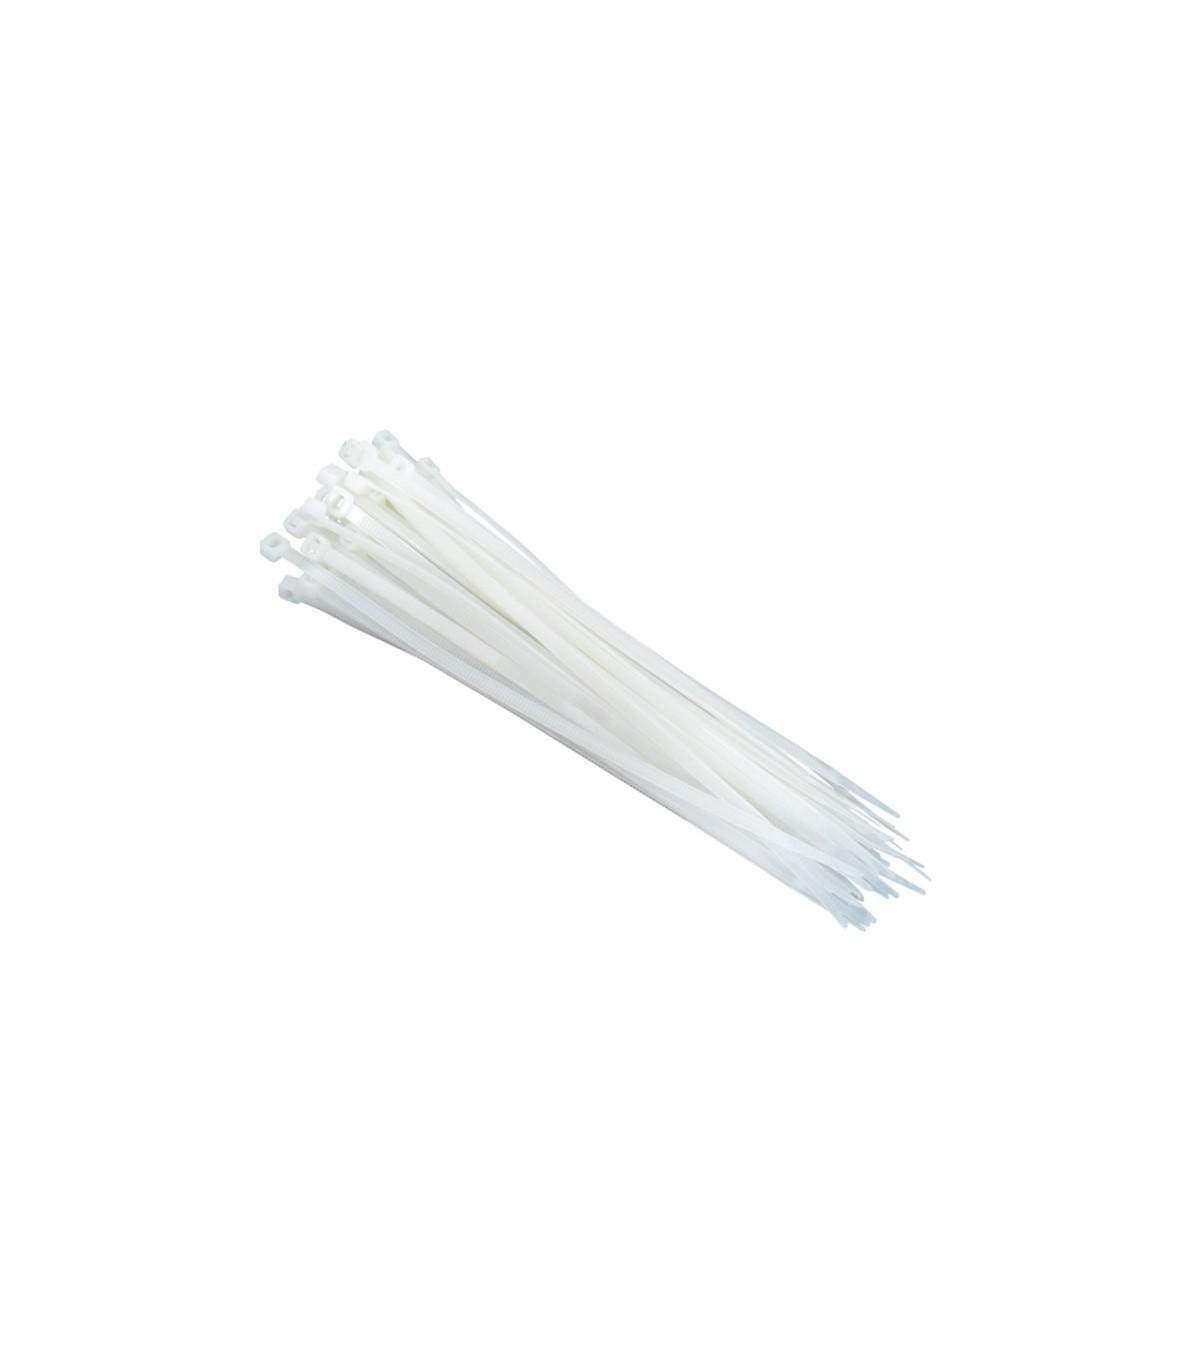 USE Plastične vezice CT 400/4.8 4.8 x 400 mm 25/1 bele